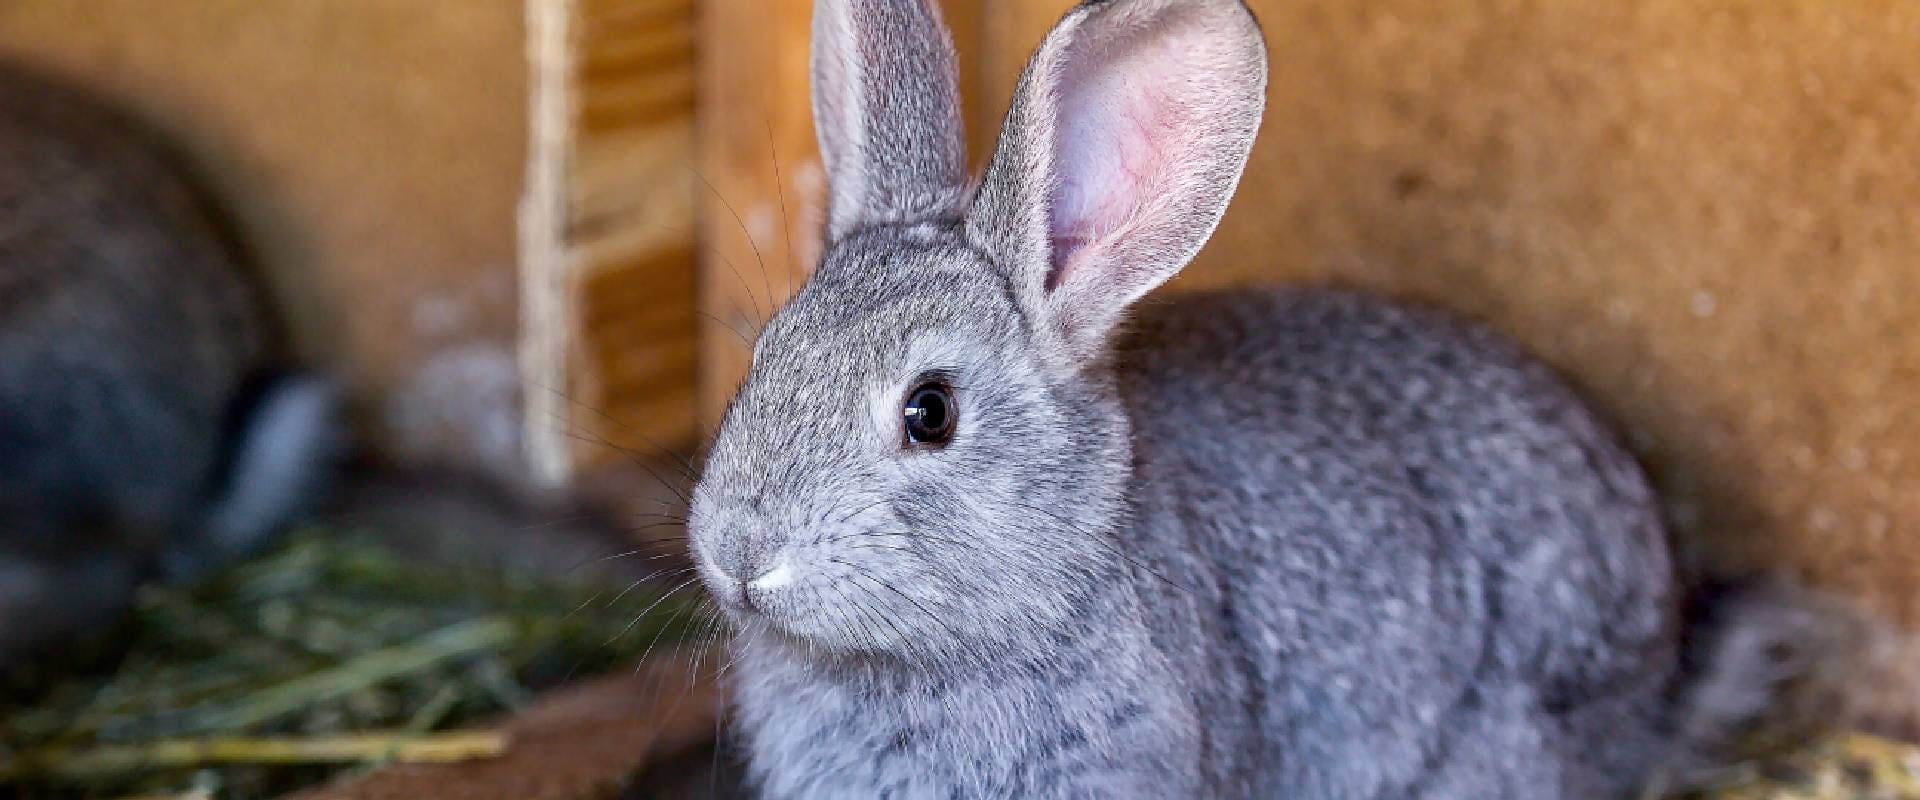 Rabbit sitting in a hutch